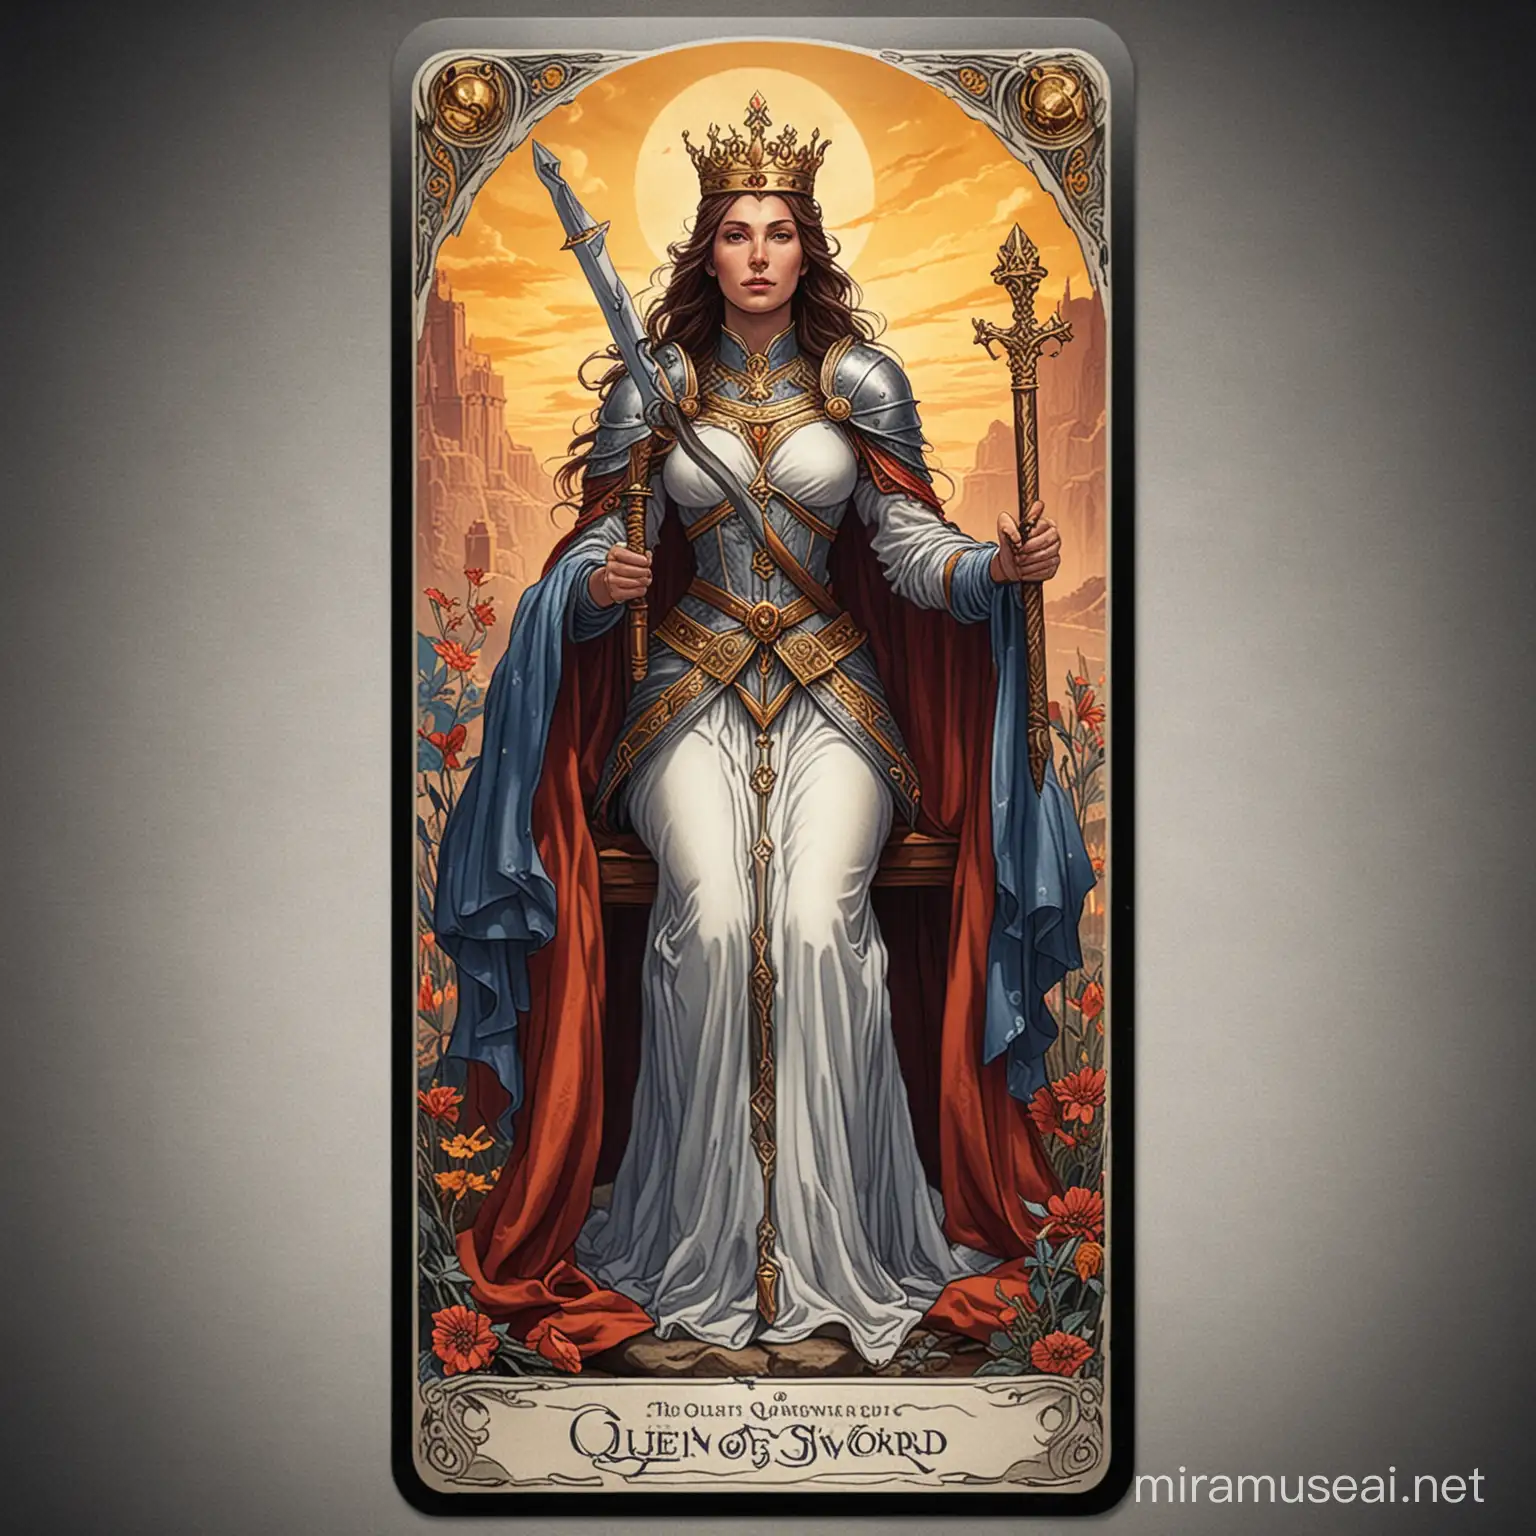 Mystical Queen of Swords Tarot Card with Graceful Wisdom